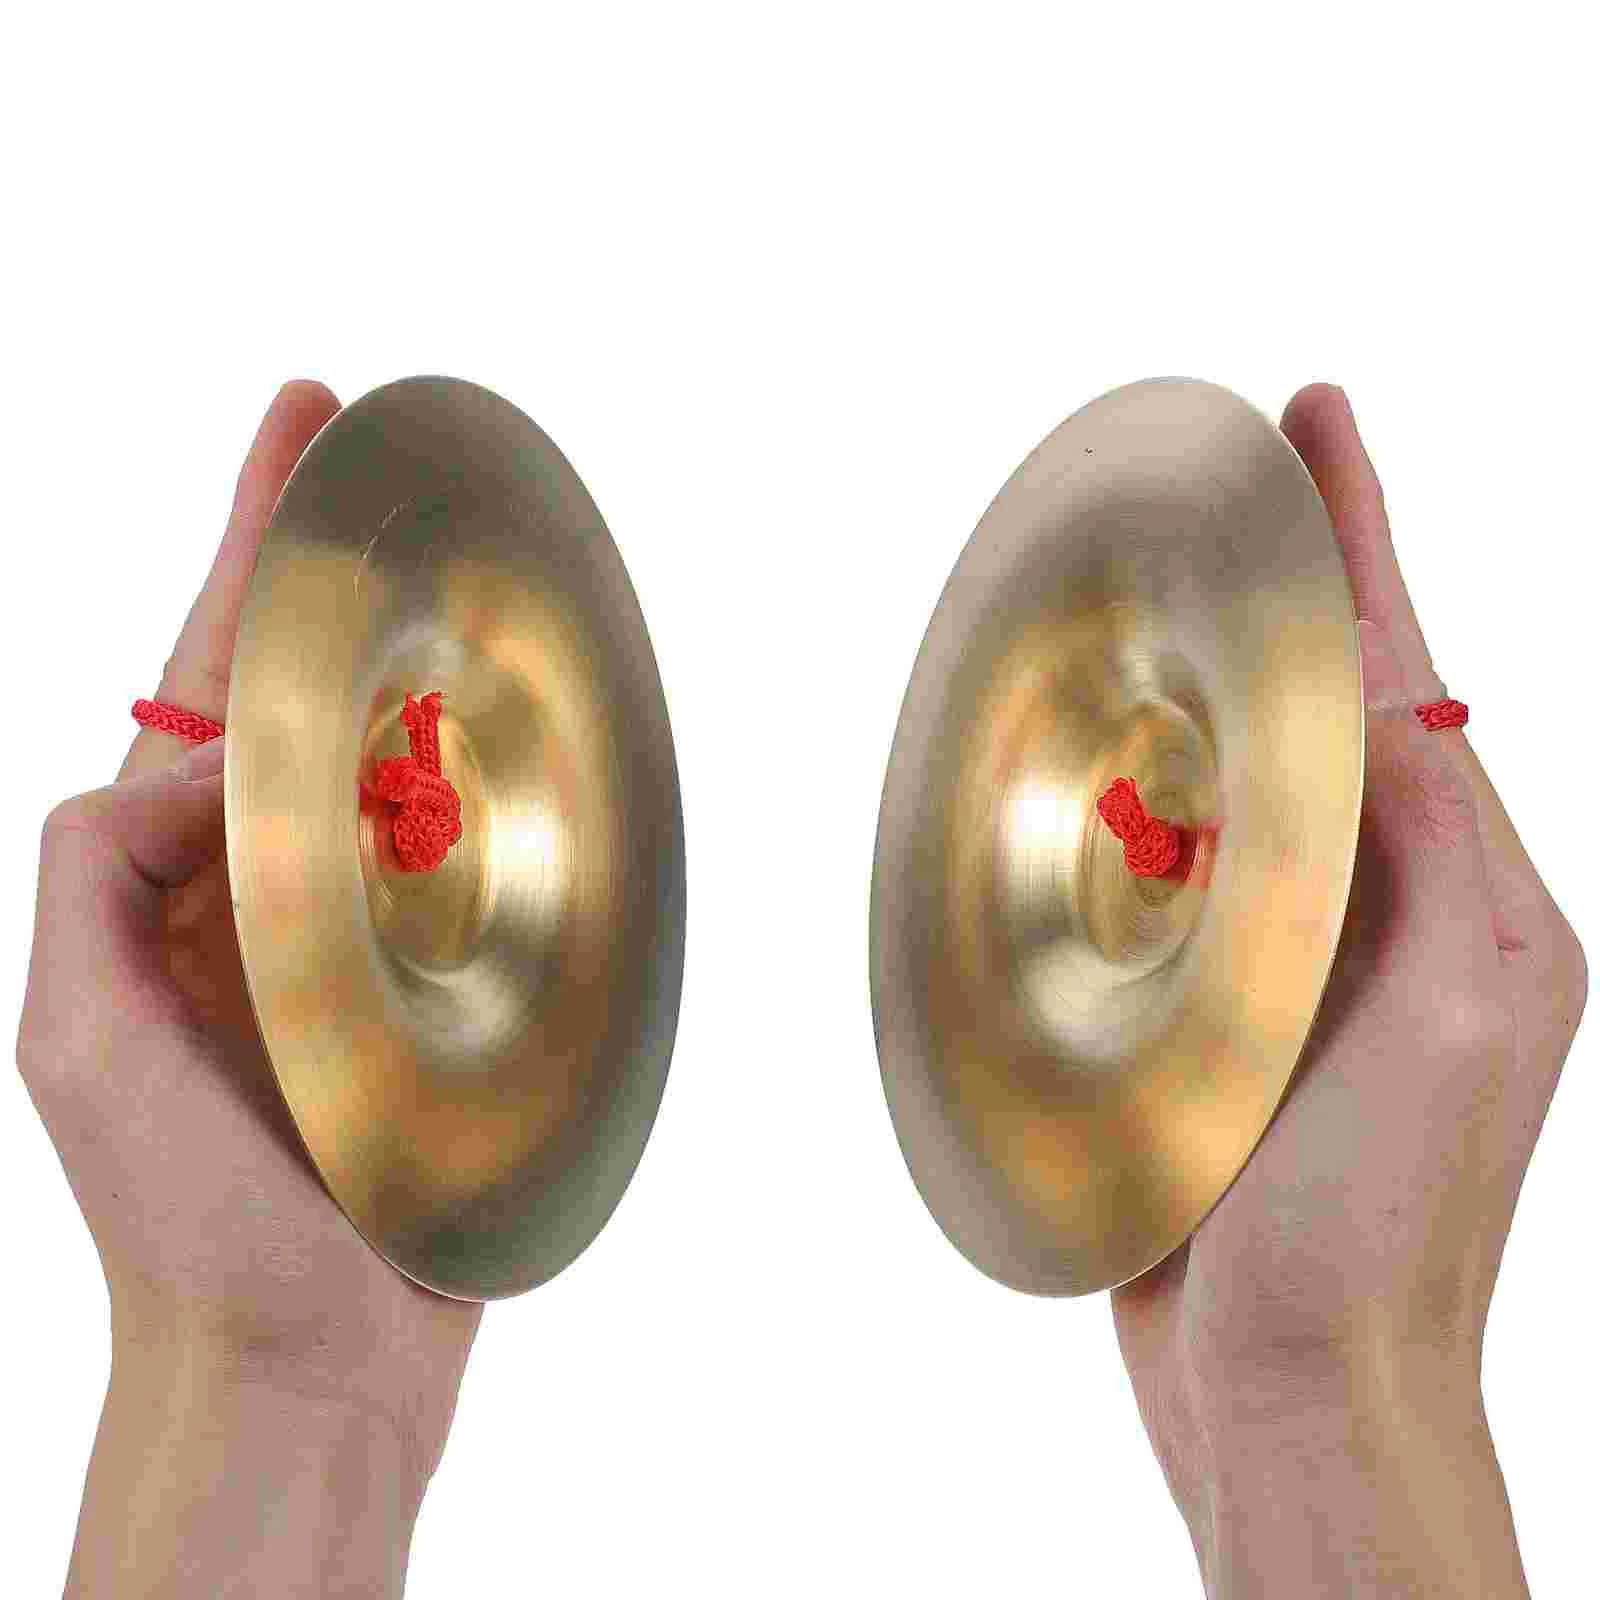 Crash Cymbal Education Toys Copper Finger Cymbal Spanish Finger Cymbals Brass Cymbals Ring Toys Kids enlarge